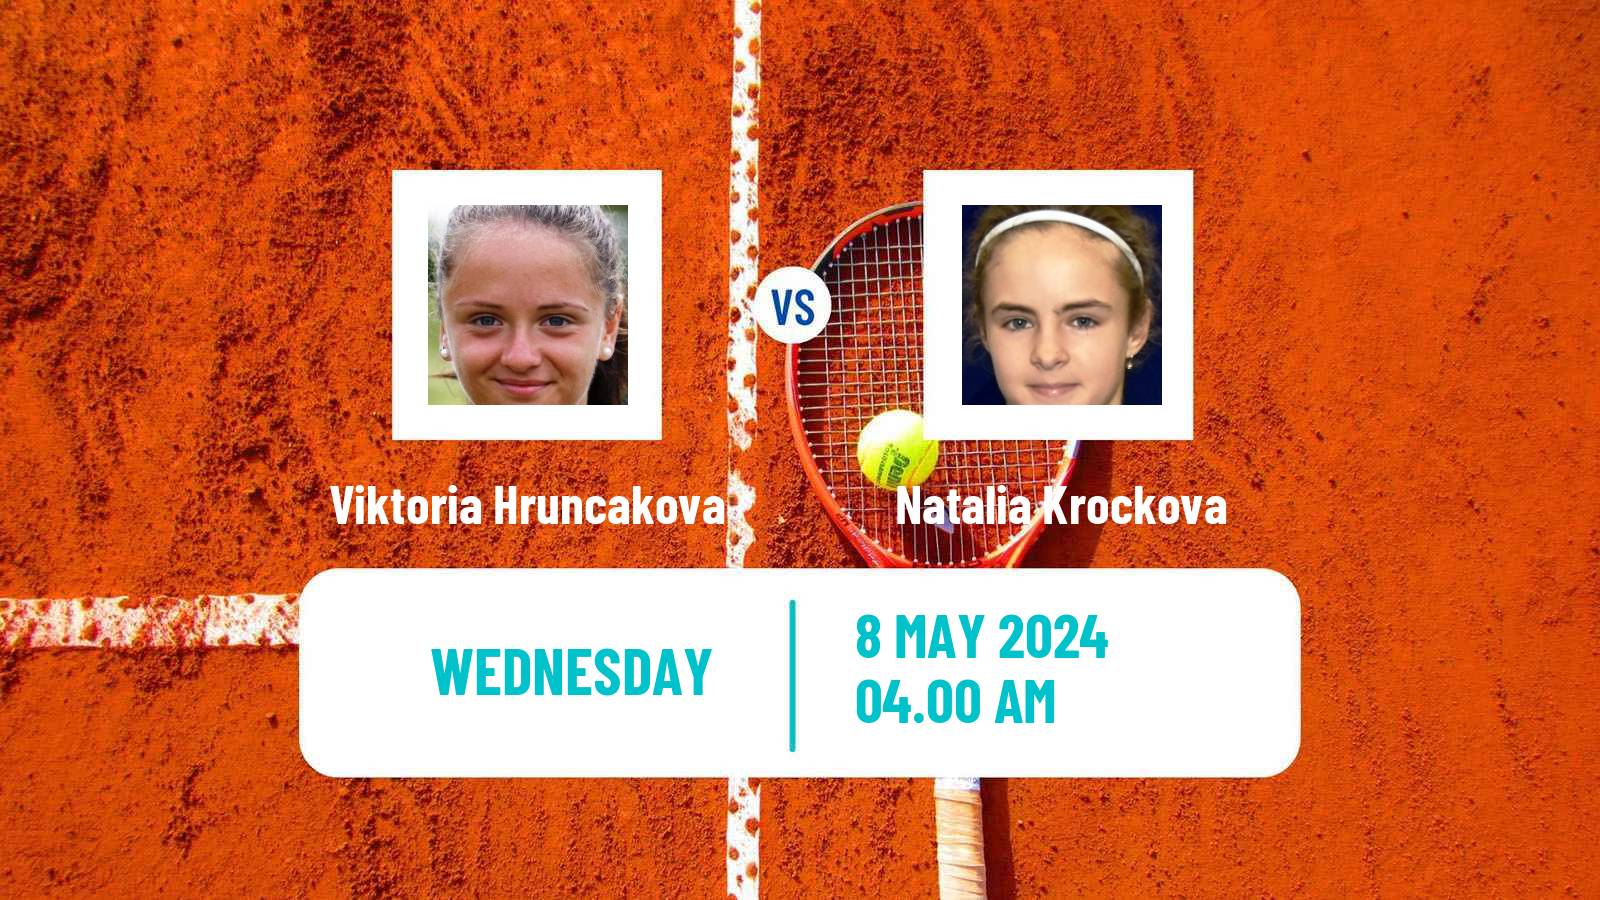 Tennis ITF W75 Trnava 2 Women Viktoria Hruncakova - Natalia Krockova